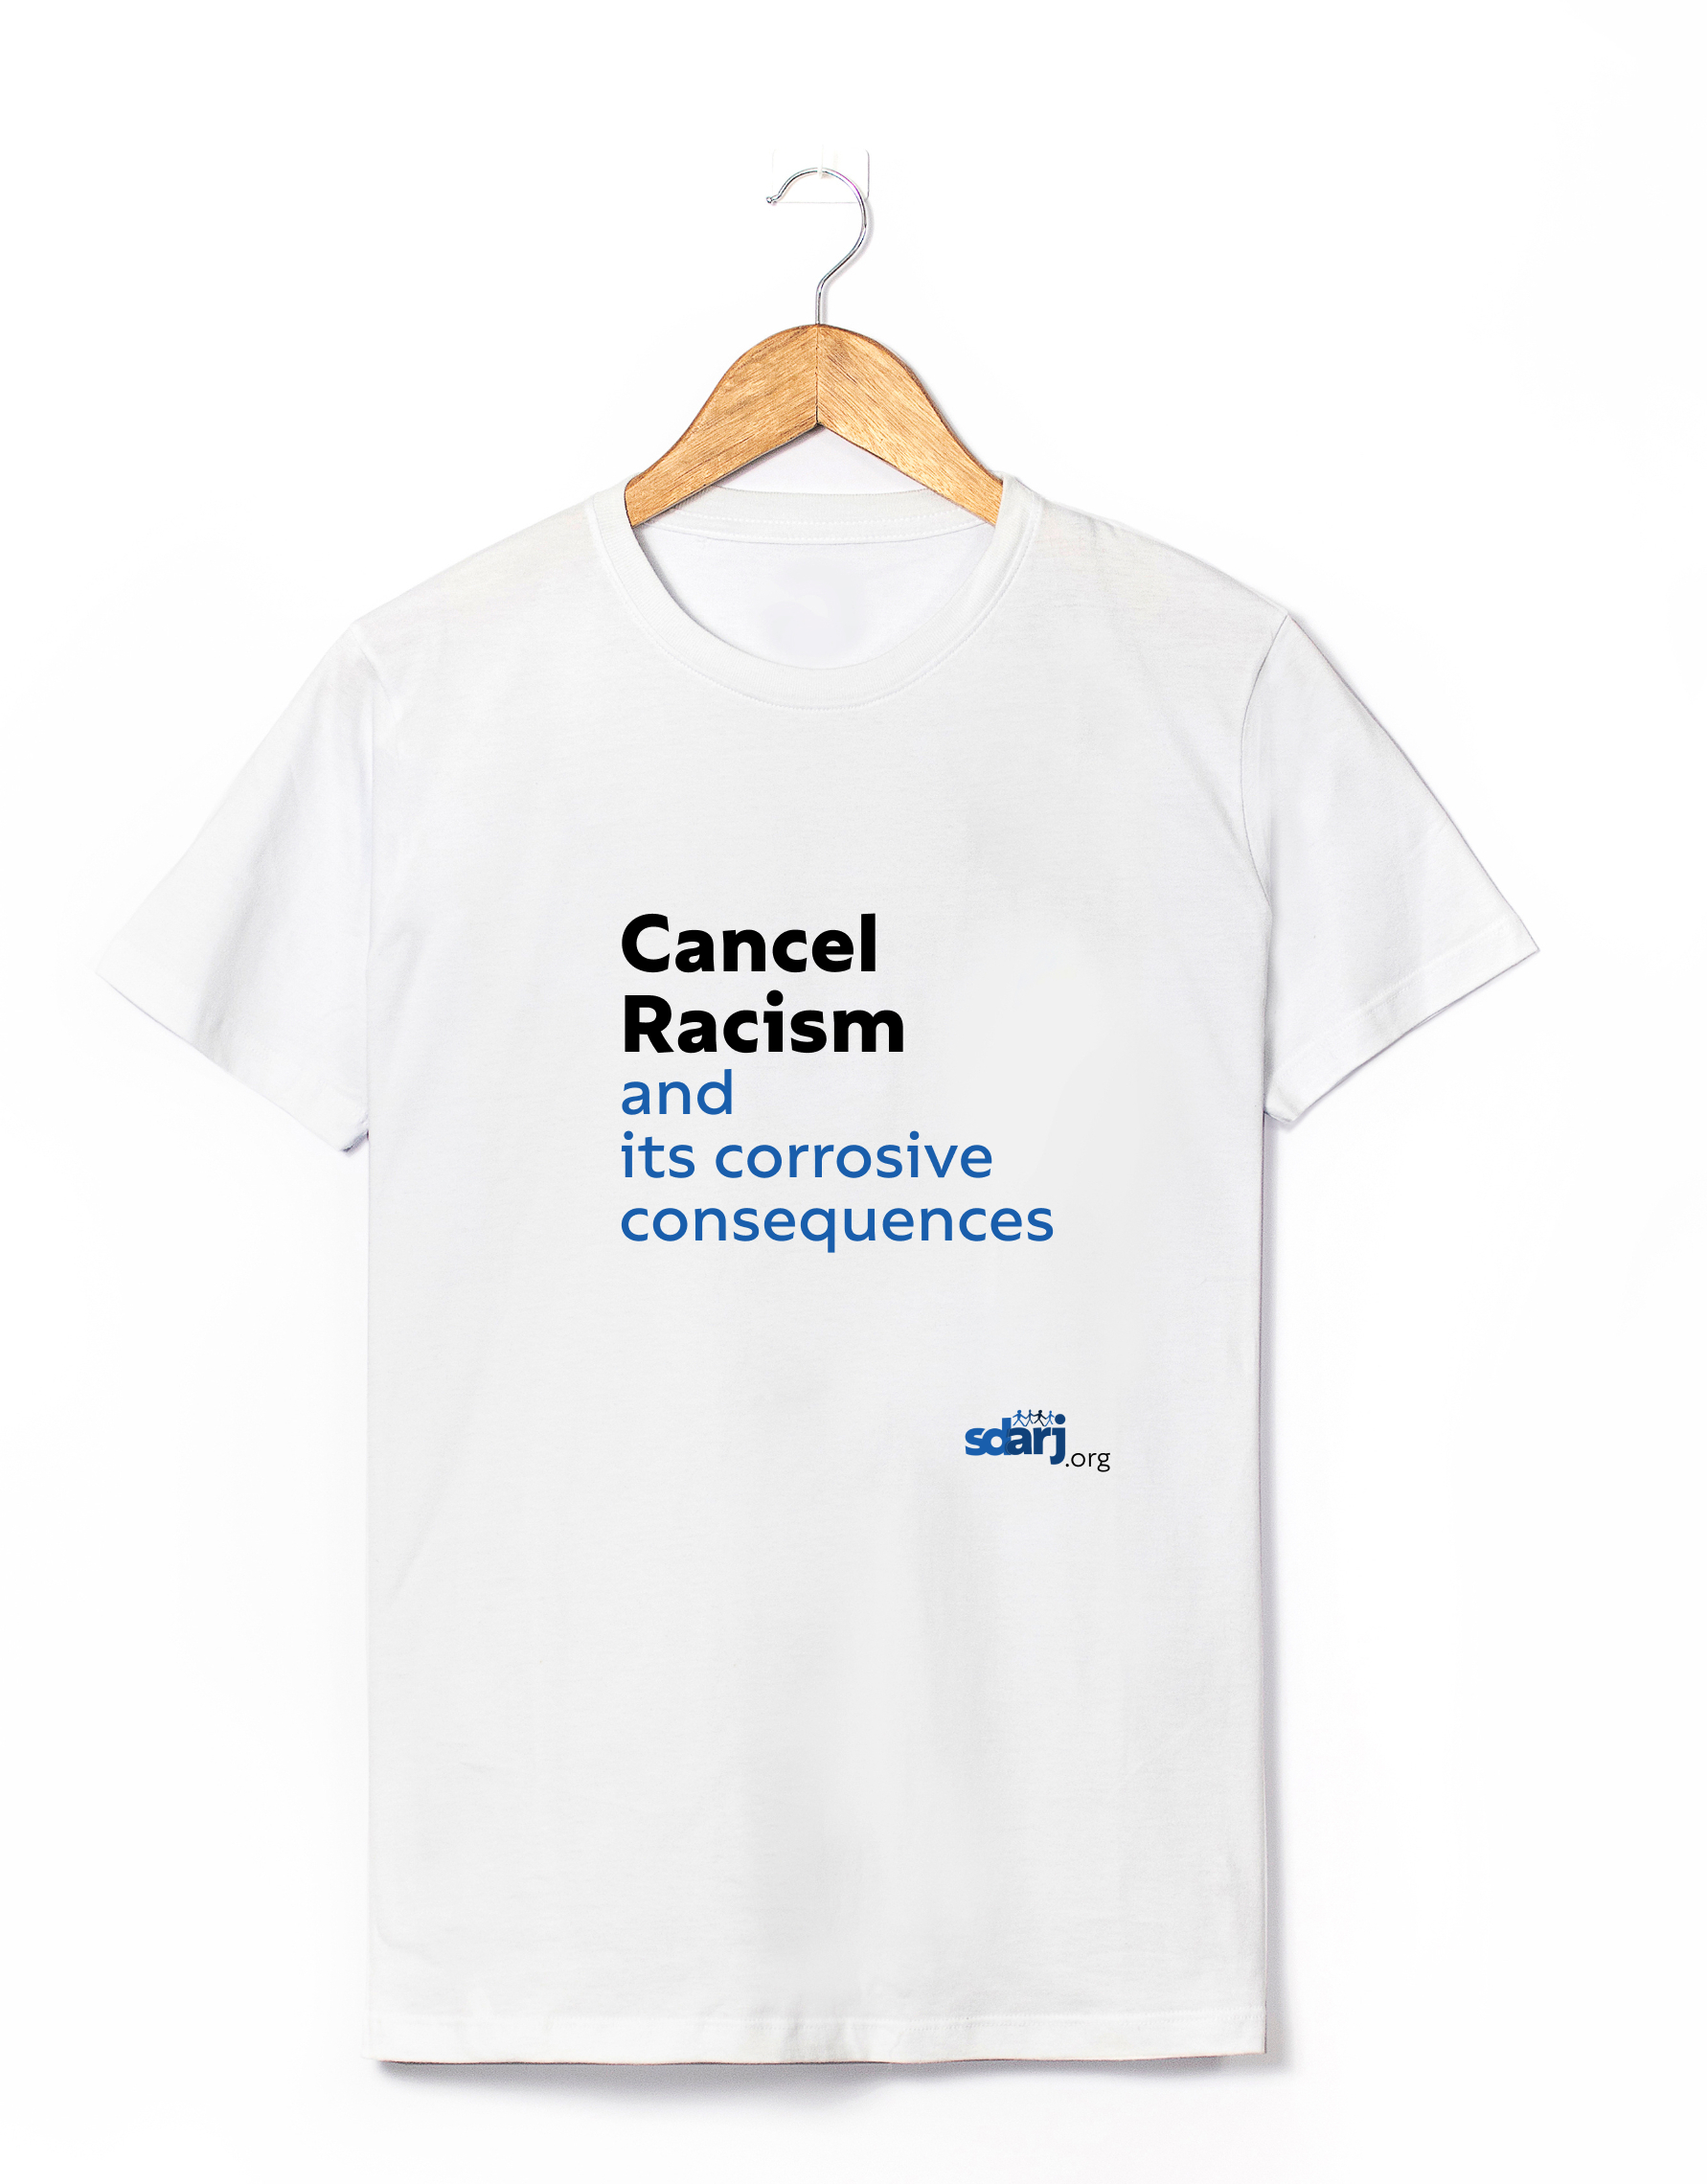 At regere Jeg har erkendt det log Cancel Racism – T-Shirt - Southern Delaware Alliance for Racial Justice